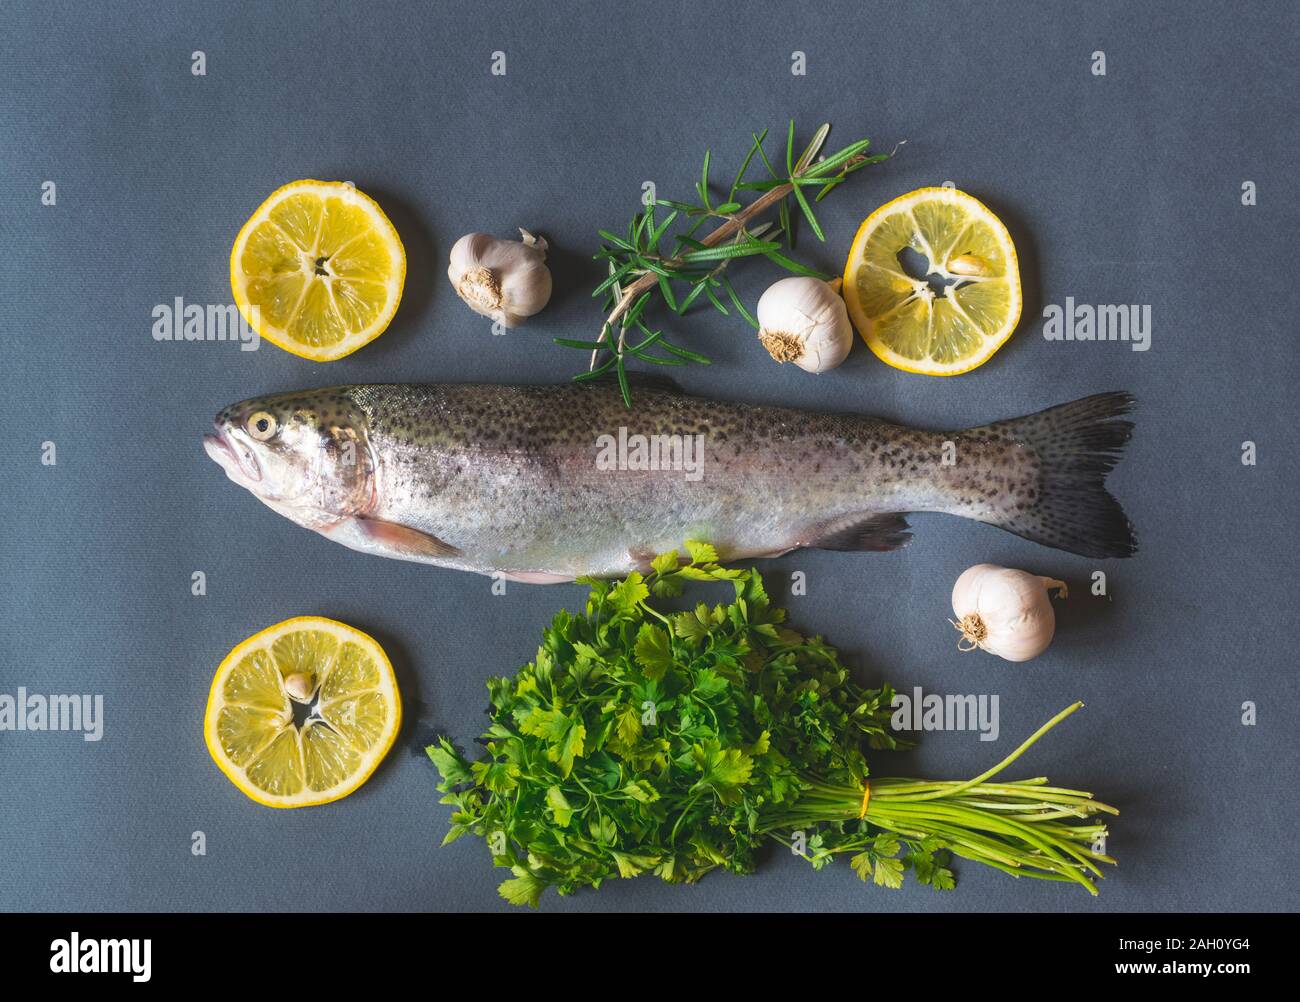 Frische Forellen auf dunklen Tisch mit Petersilie, Knoblauch und Rosmarin. Lecker Fisch vorbereiten für das Essen. Top Winkel anzeigen Stockfoto